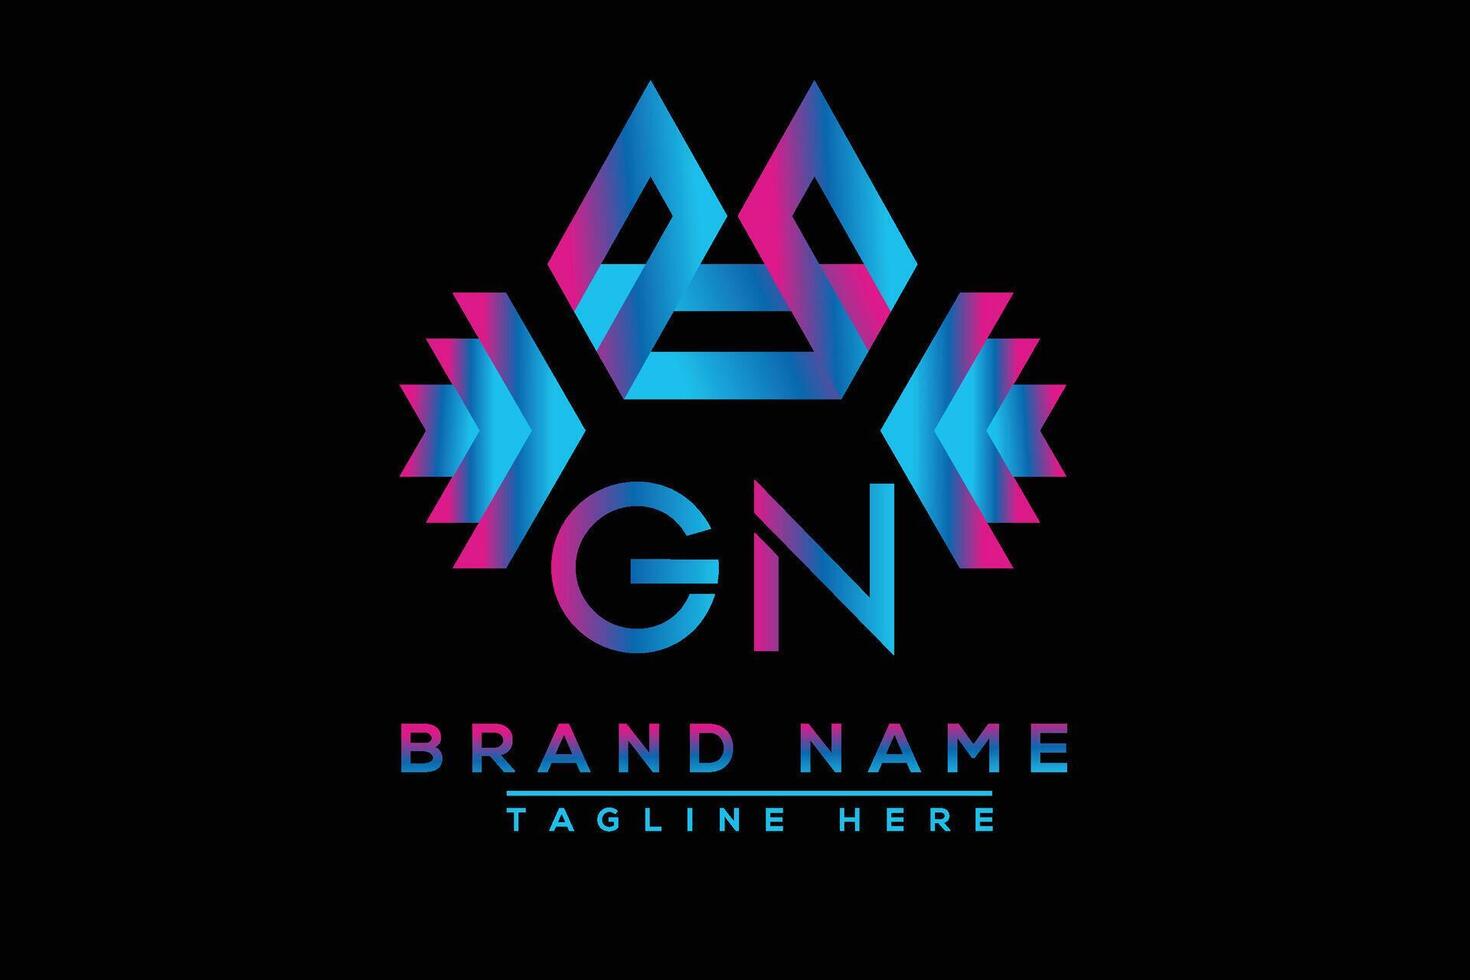 gn brief logo ontwerp. vector logo ontwerp voor bedrijf.